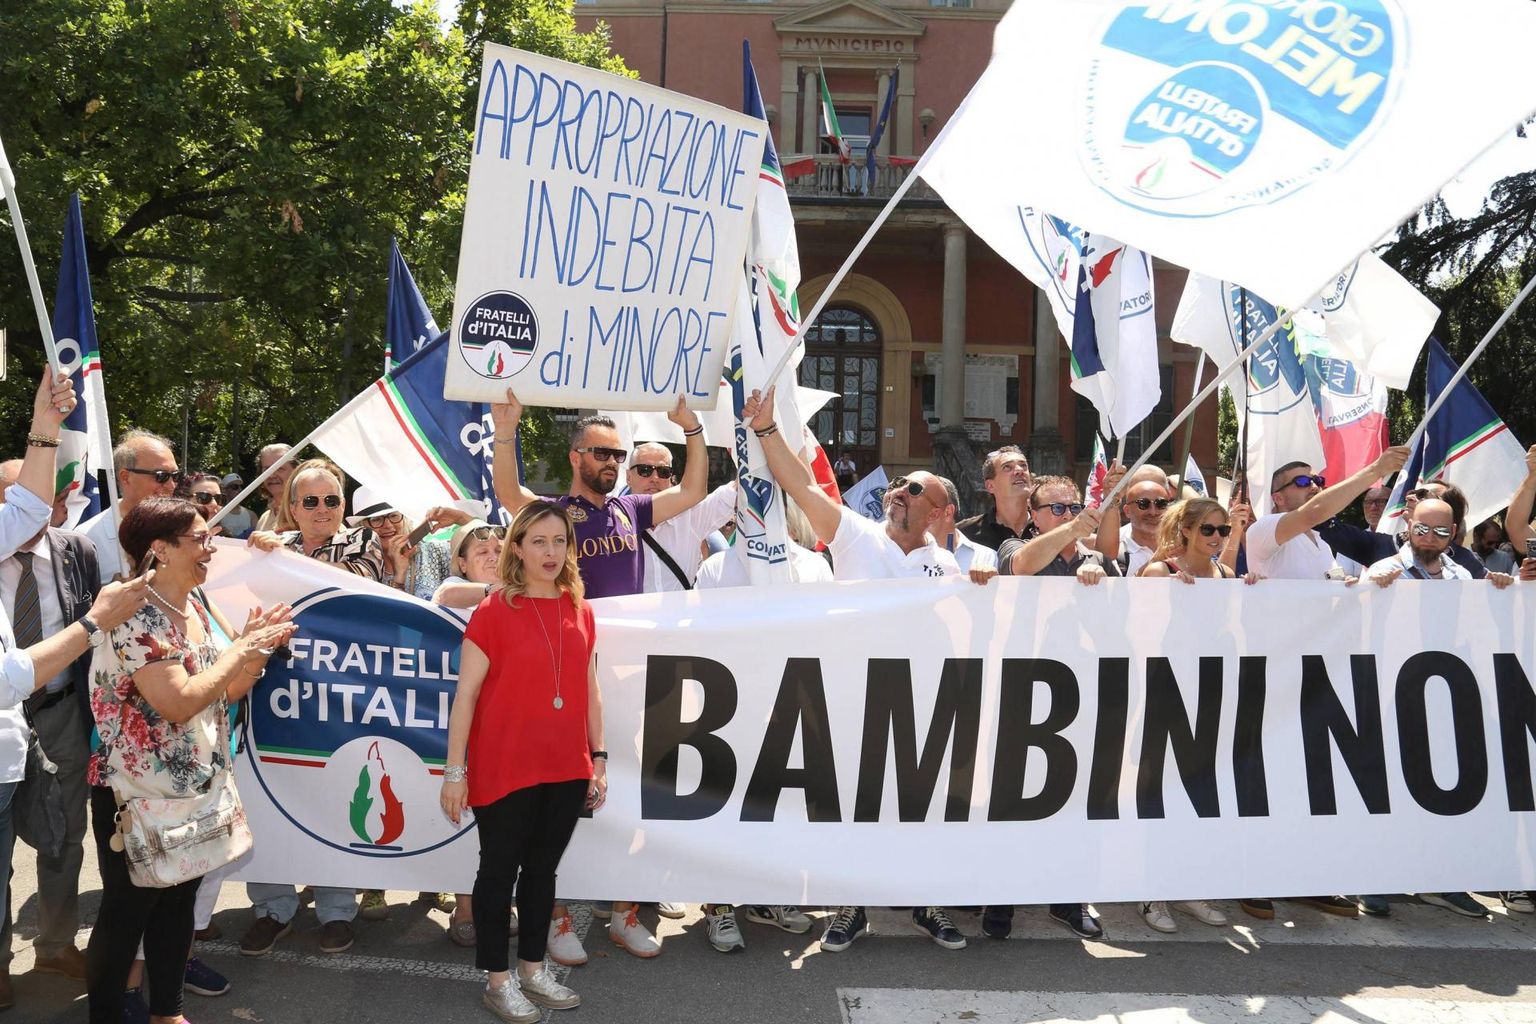 Erakonna Itaalia Vennaskond meeleavaldus Bibbianos pärast seda, kui linnapea, arstid ja sotsiaaltöötajad vahistati seoses laste psühholoogilise manipuleerimise ja müümise skeemiga.